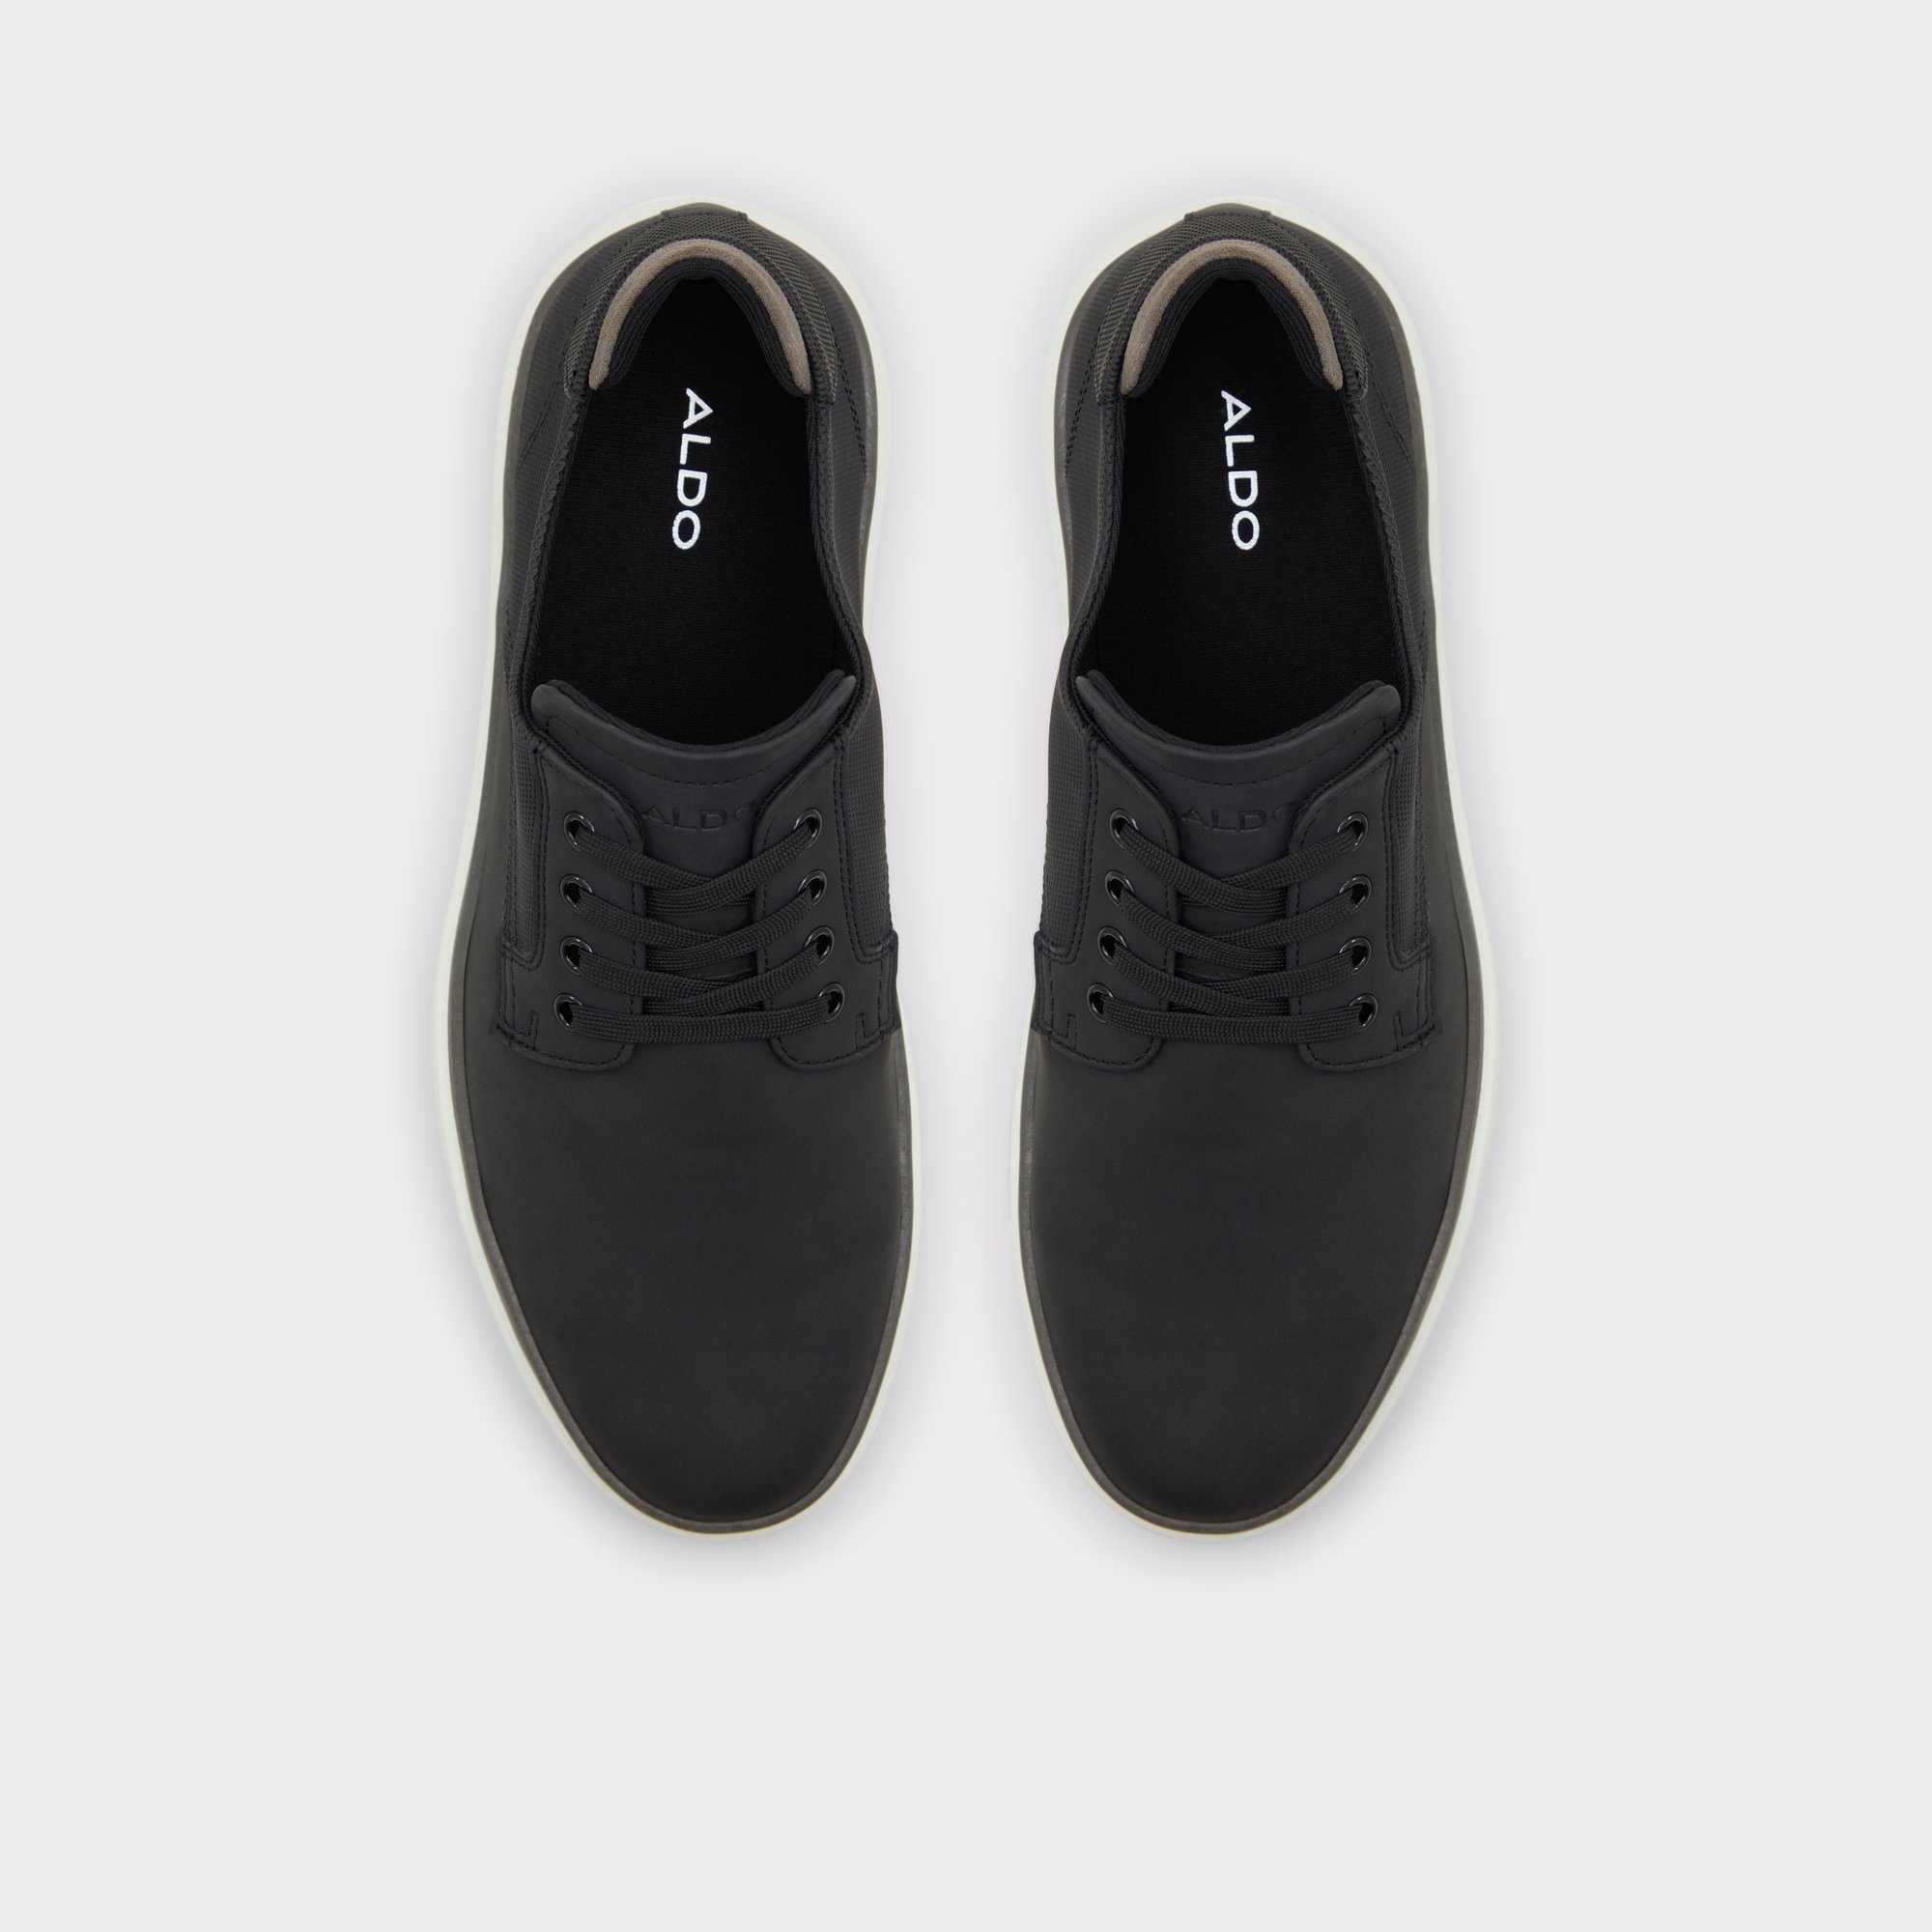 Grouville Black Men's Casual Shoes | ALDO Canada